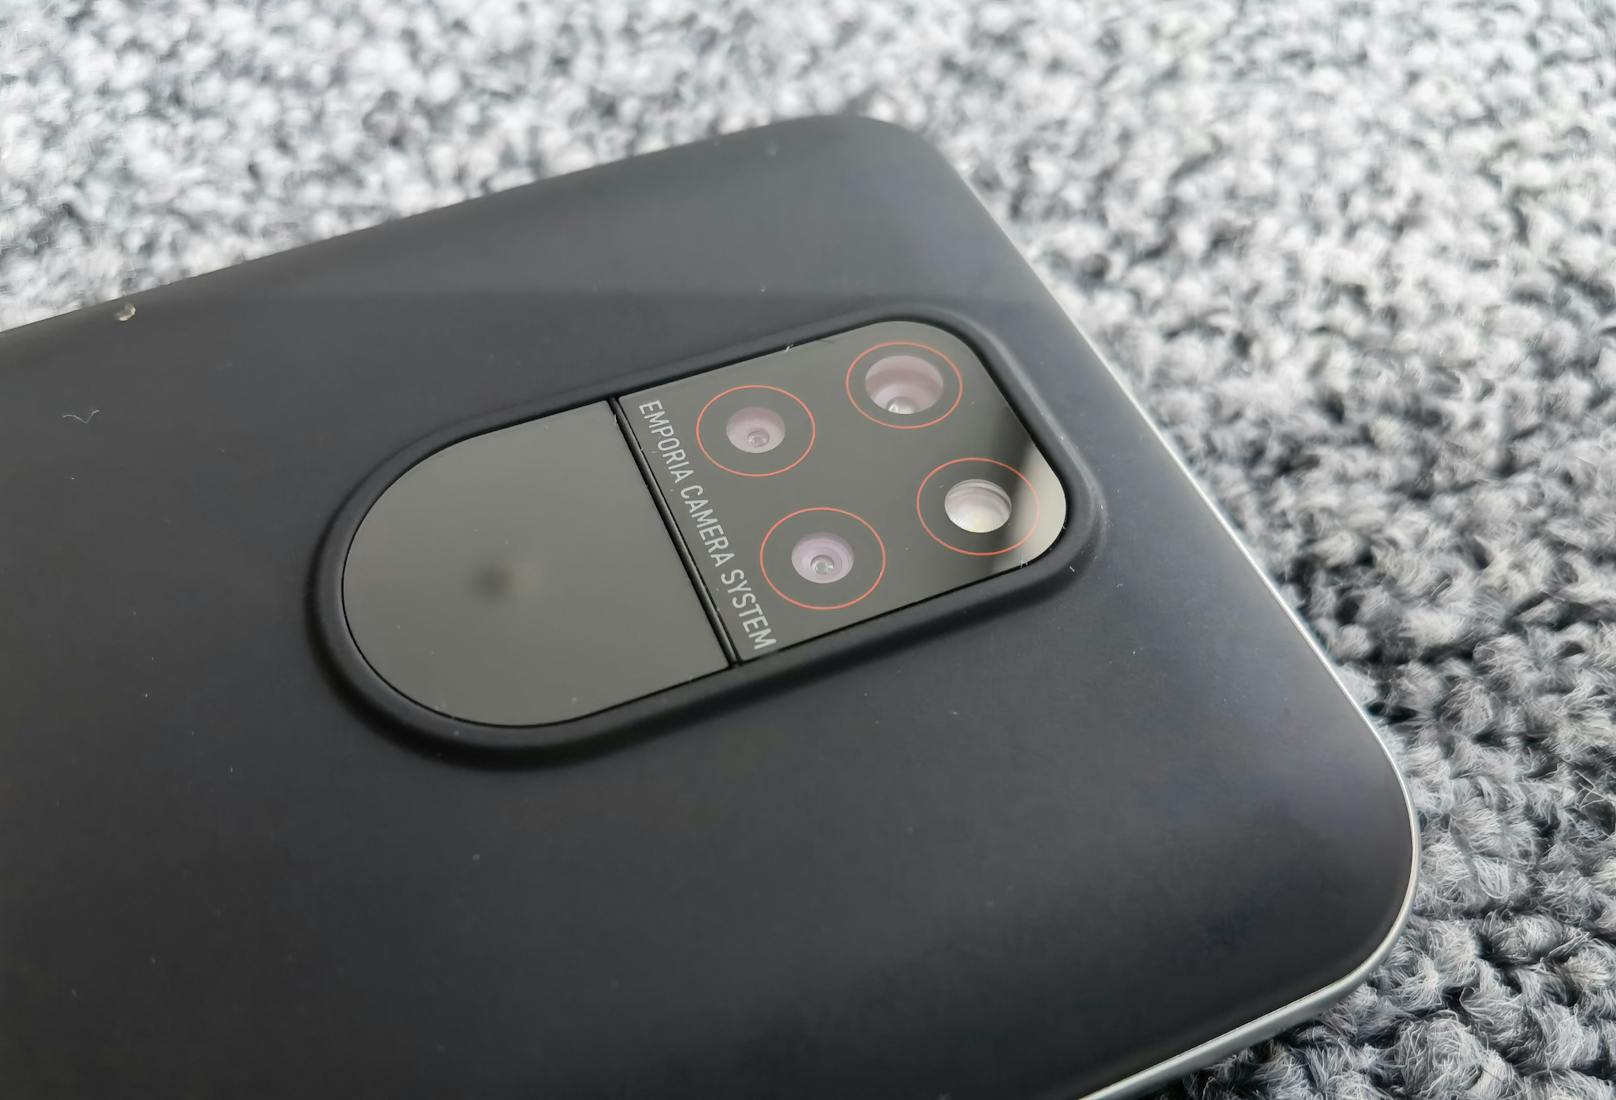 Neu und moderner ist das Design des Smart 5. Mit dem montierten Standard-Cover bekommt man ein schickes Gerät, bei dem vor allem die Kamera ins Auge sticht.